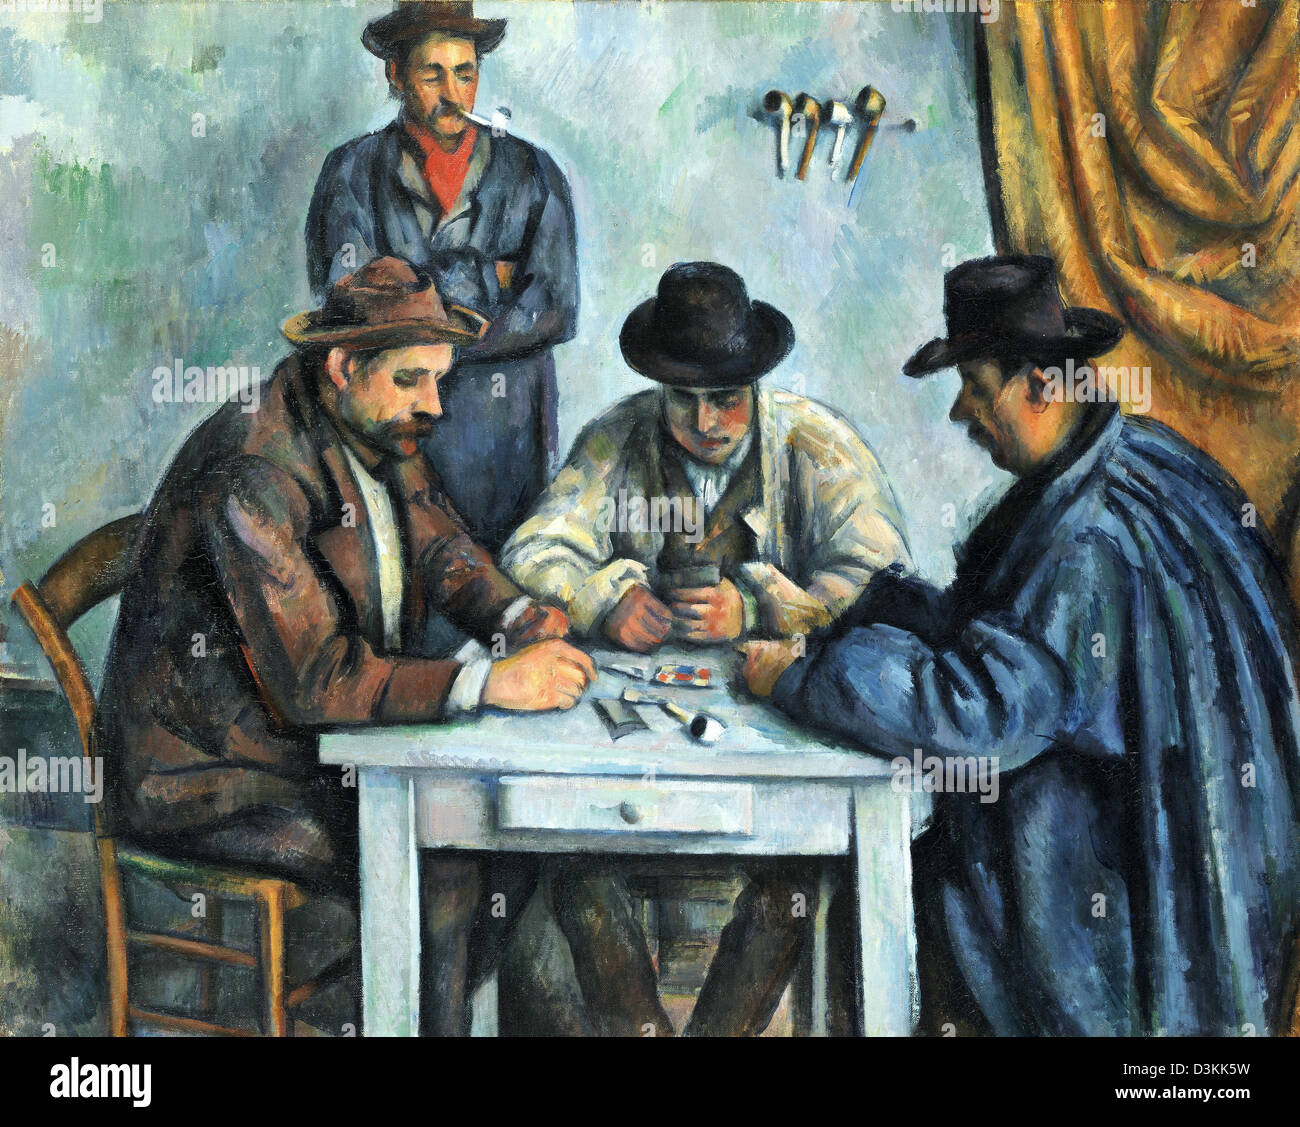 Paul Cézanne, les joueurs de cartes 1892-1893 Huile sur toile. Metropolitan Museum of Art, New York City, USA Banque D'Images